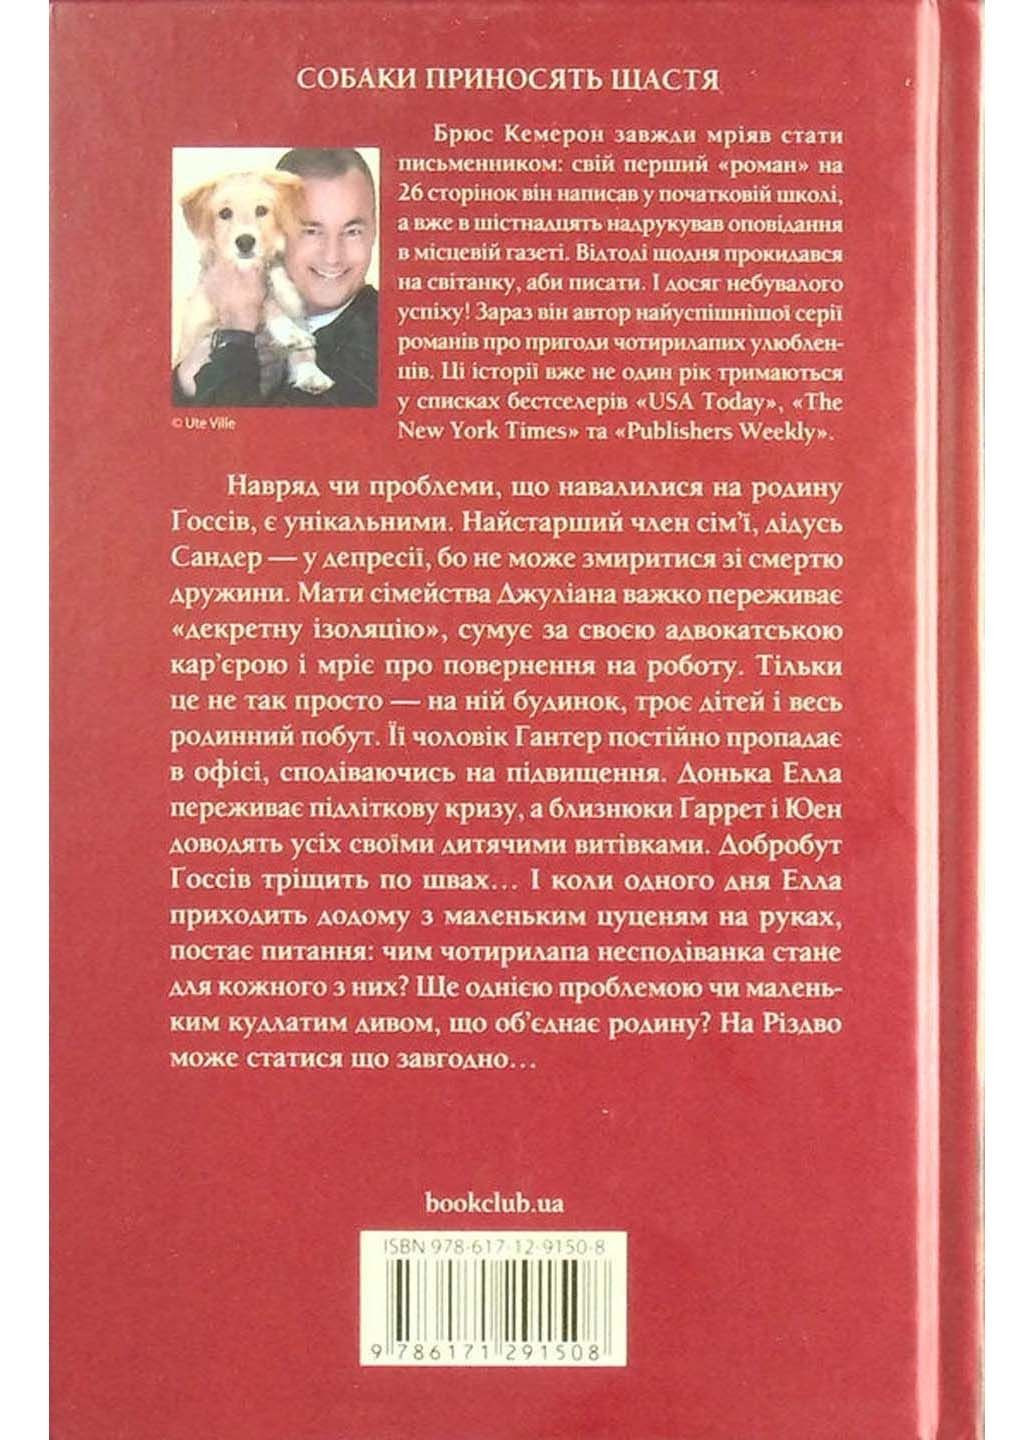 Книга Идеальное Рождество для собаки Брюс Кэмерон 2021г 256 с Клуб Семейного Досуга (293060884)